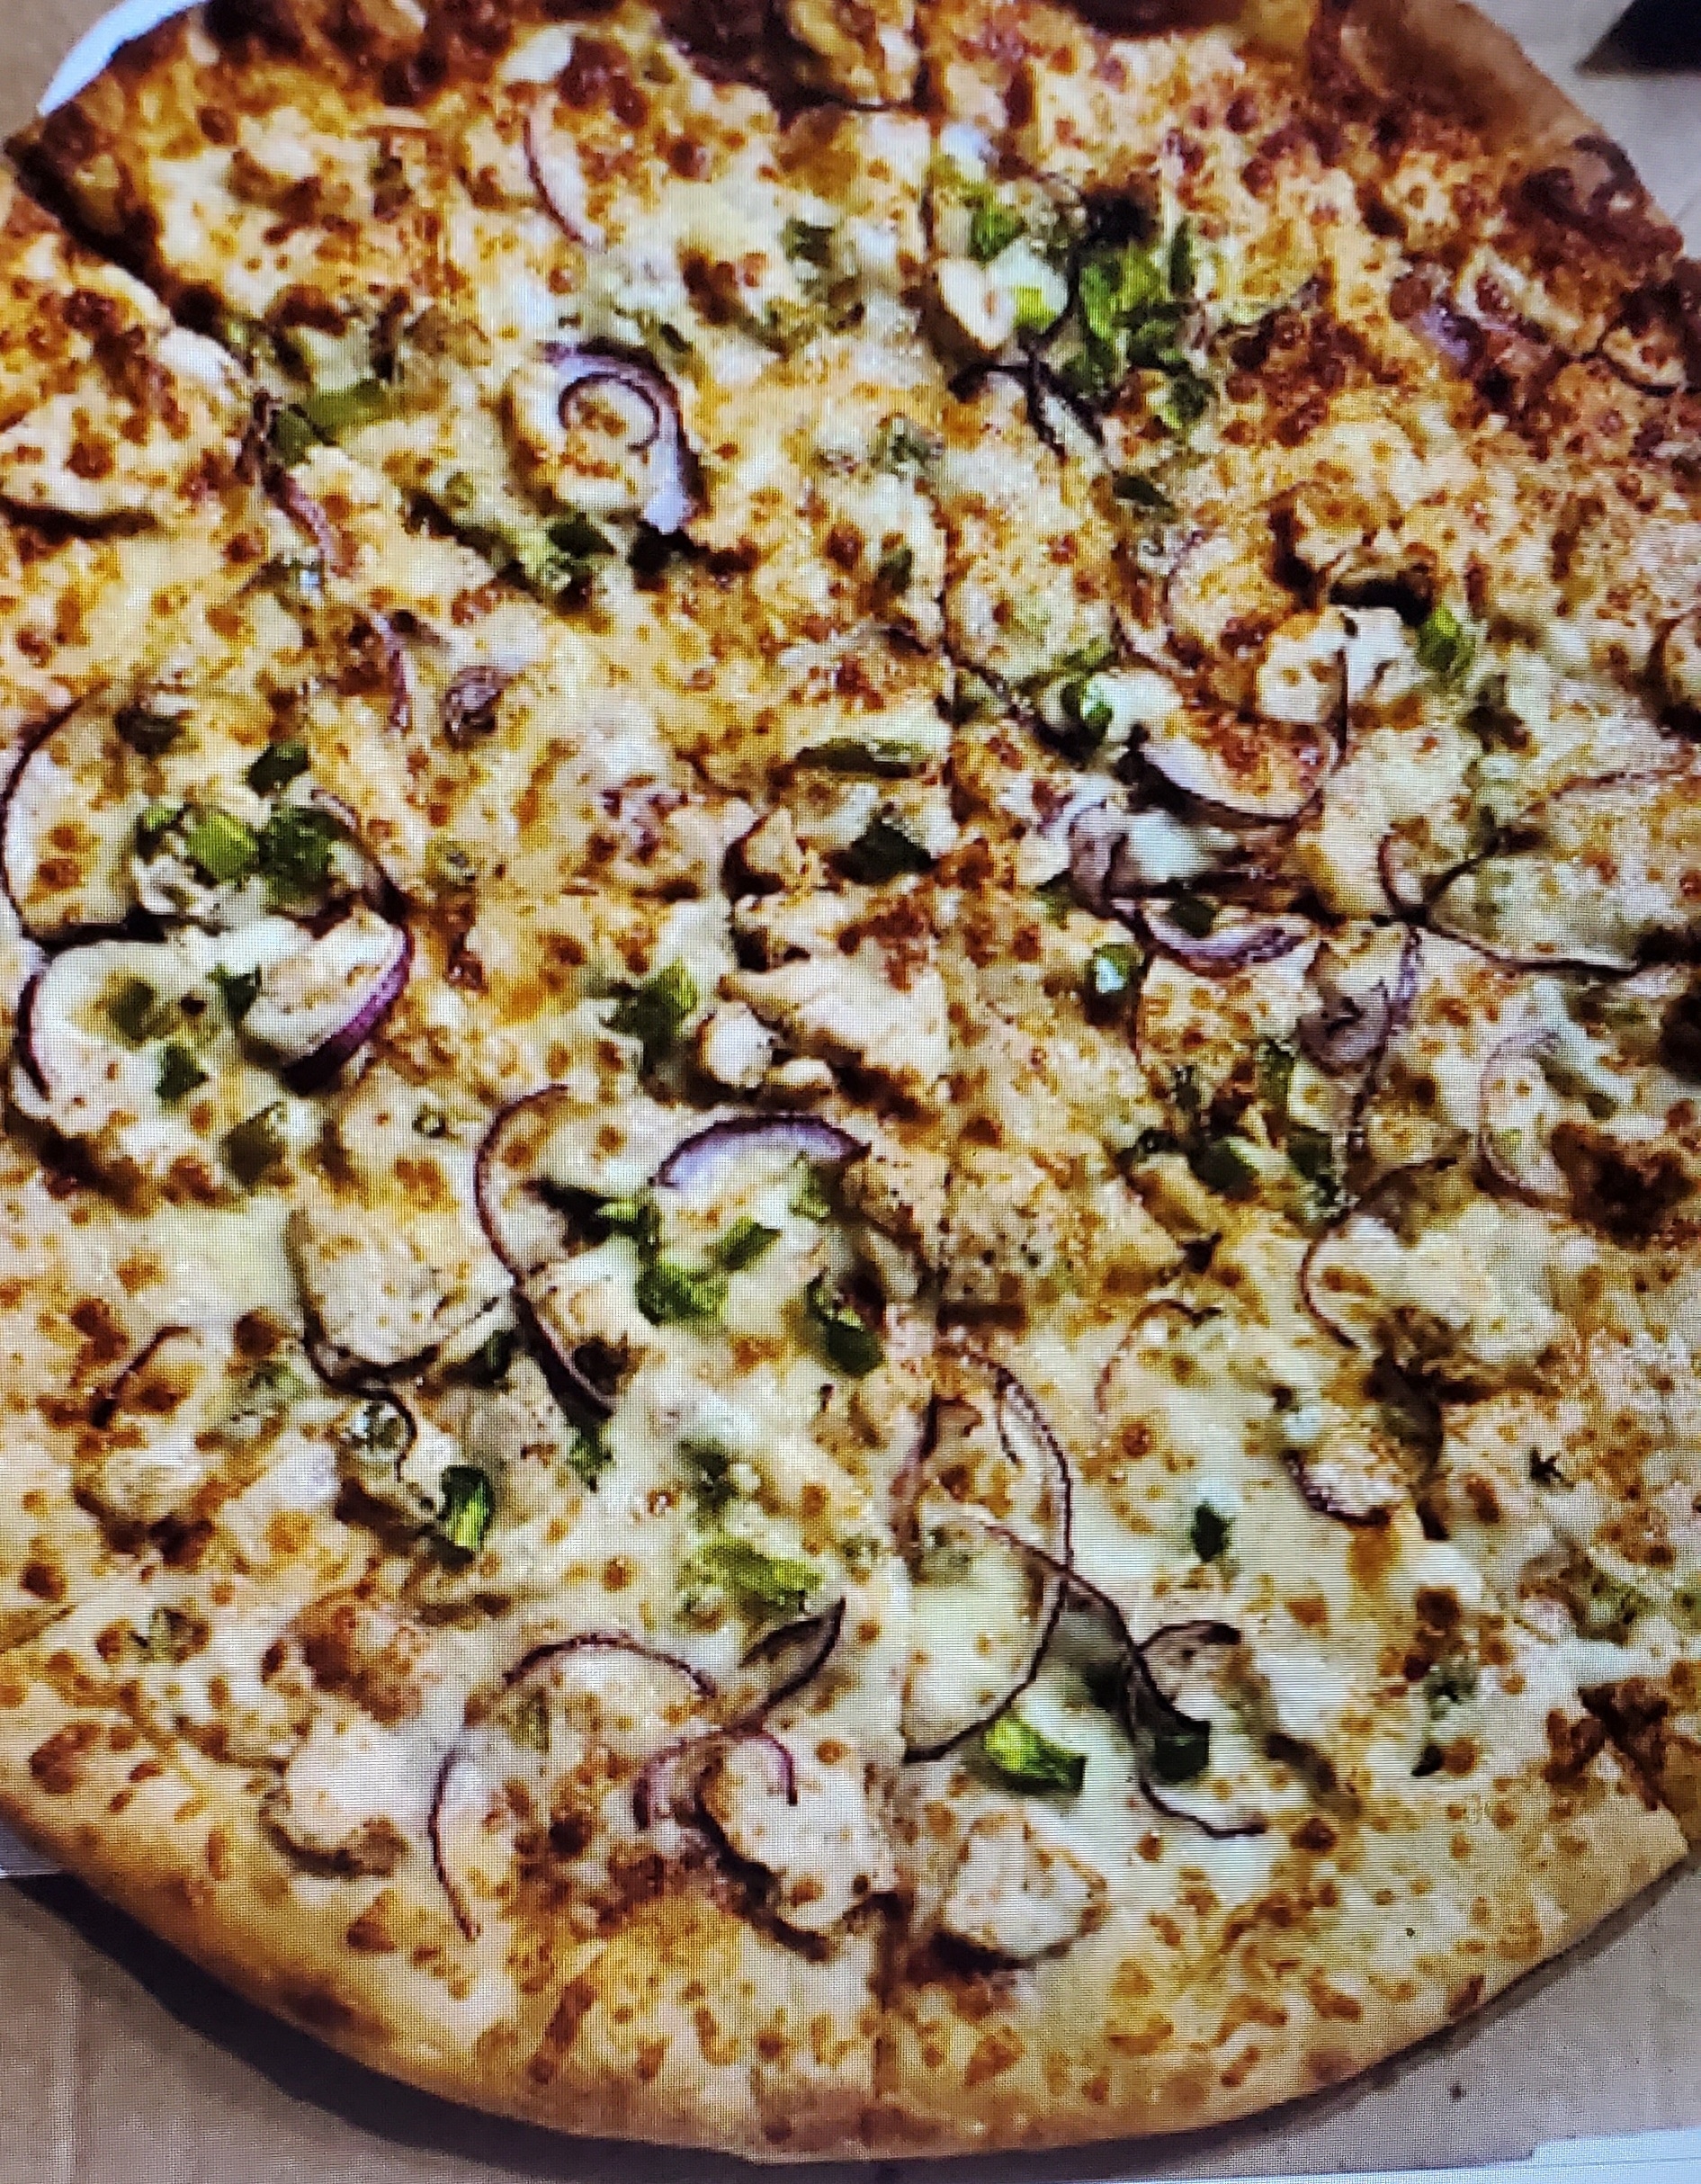 Malai Chicken Pizza (12" Medium)